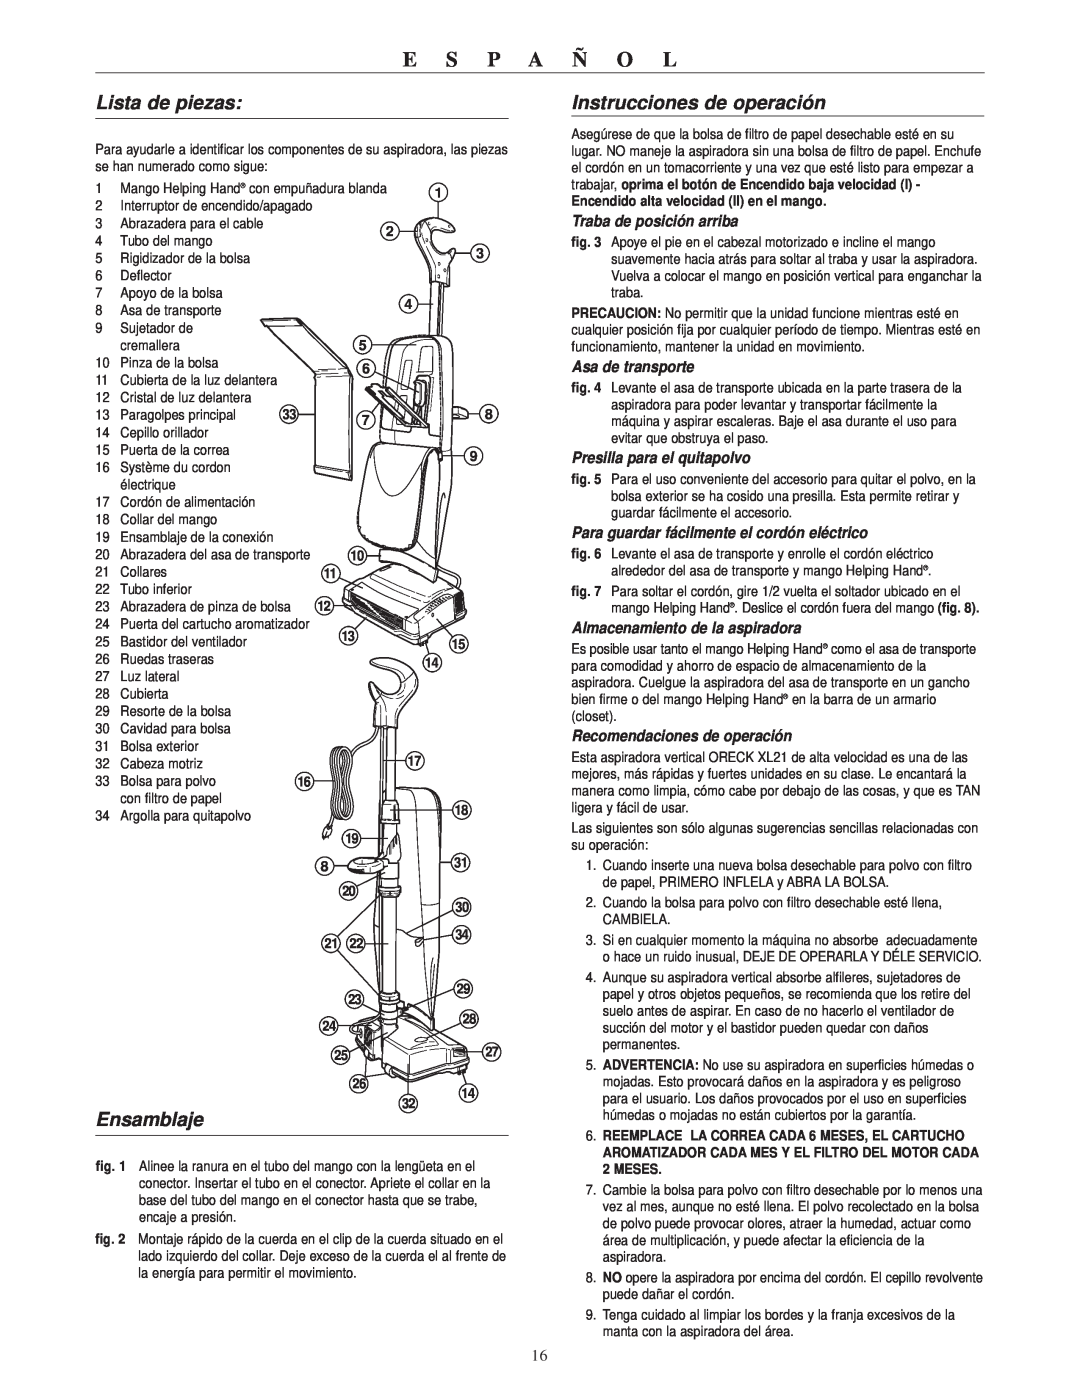 Oreck RXL21ANY warranty Lista de piezas, Ensamblaje, Instrucciones de operación, E S P A Ñ O L, Traba de posición arriba 